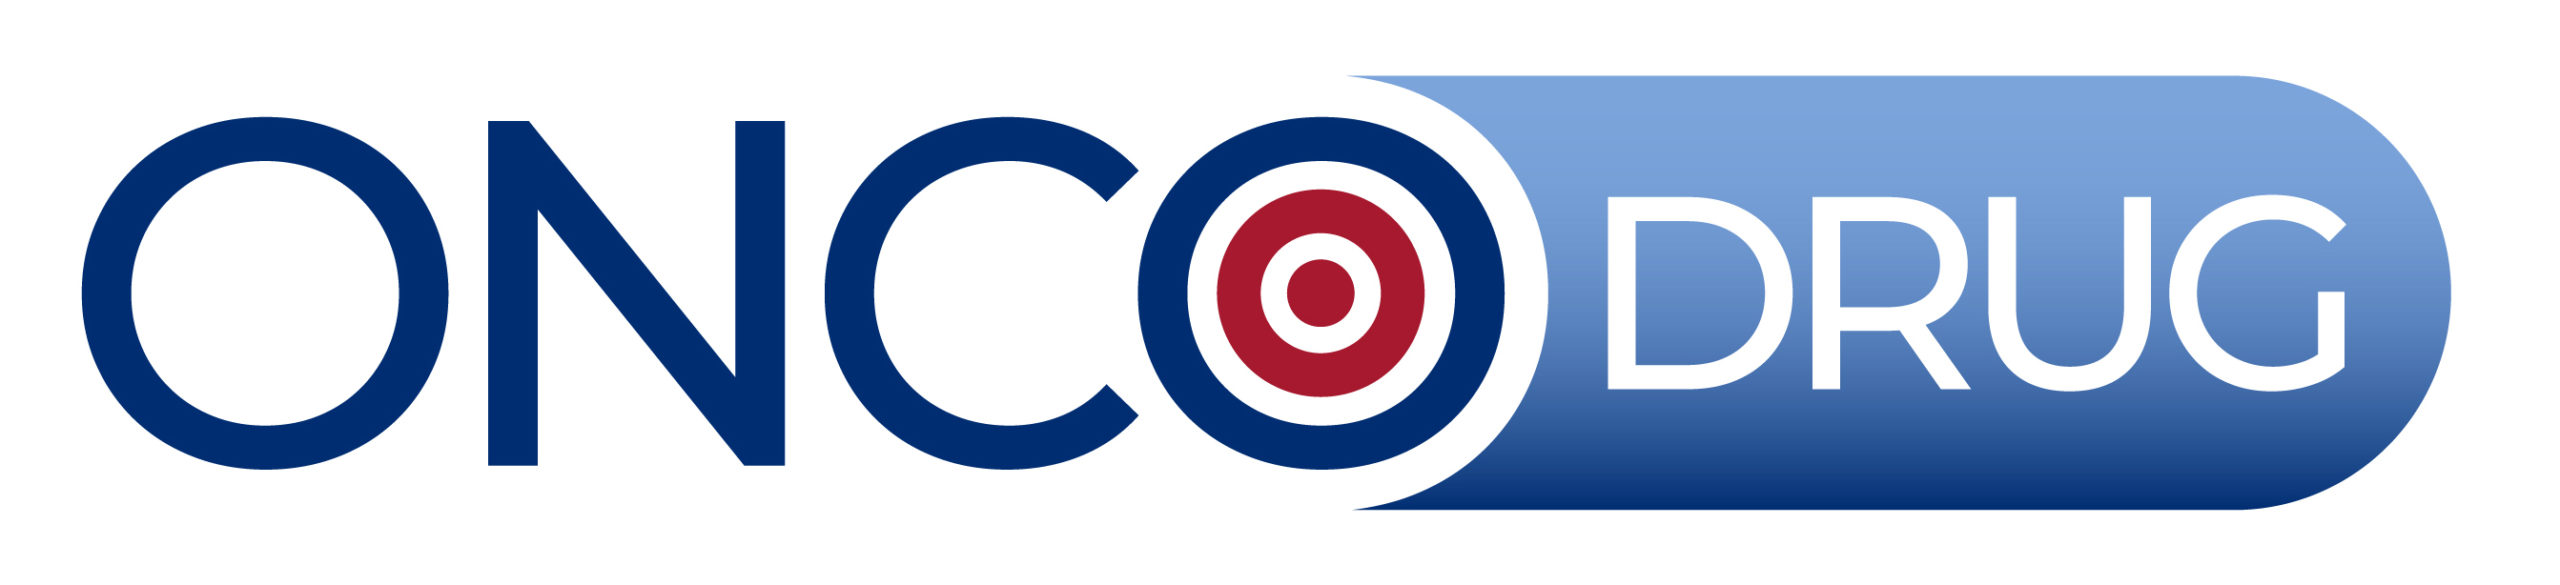 Oncodrug Logo